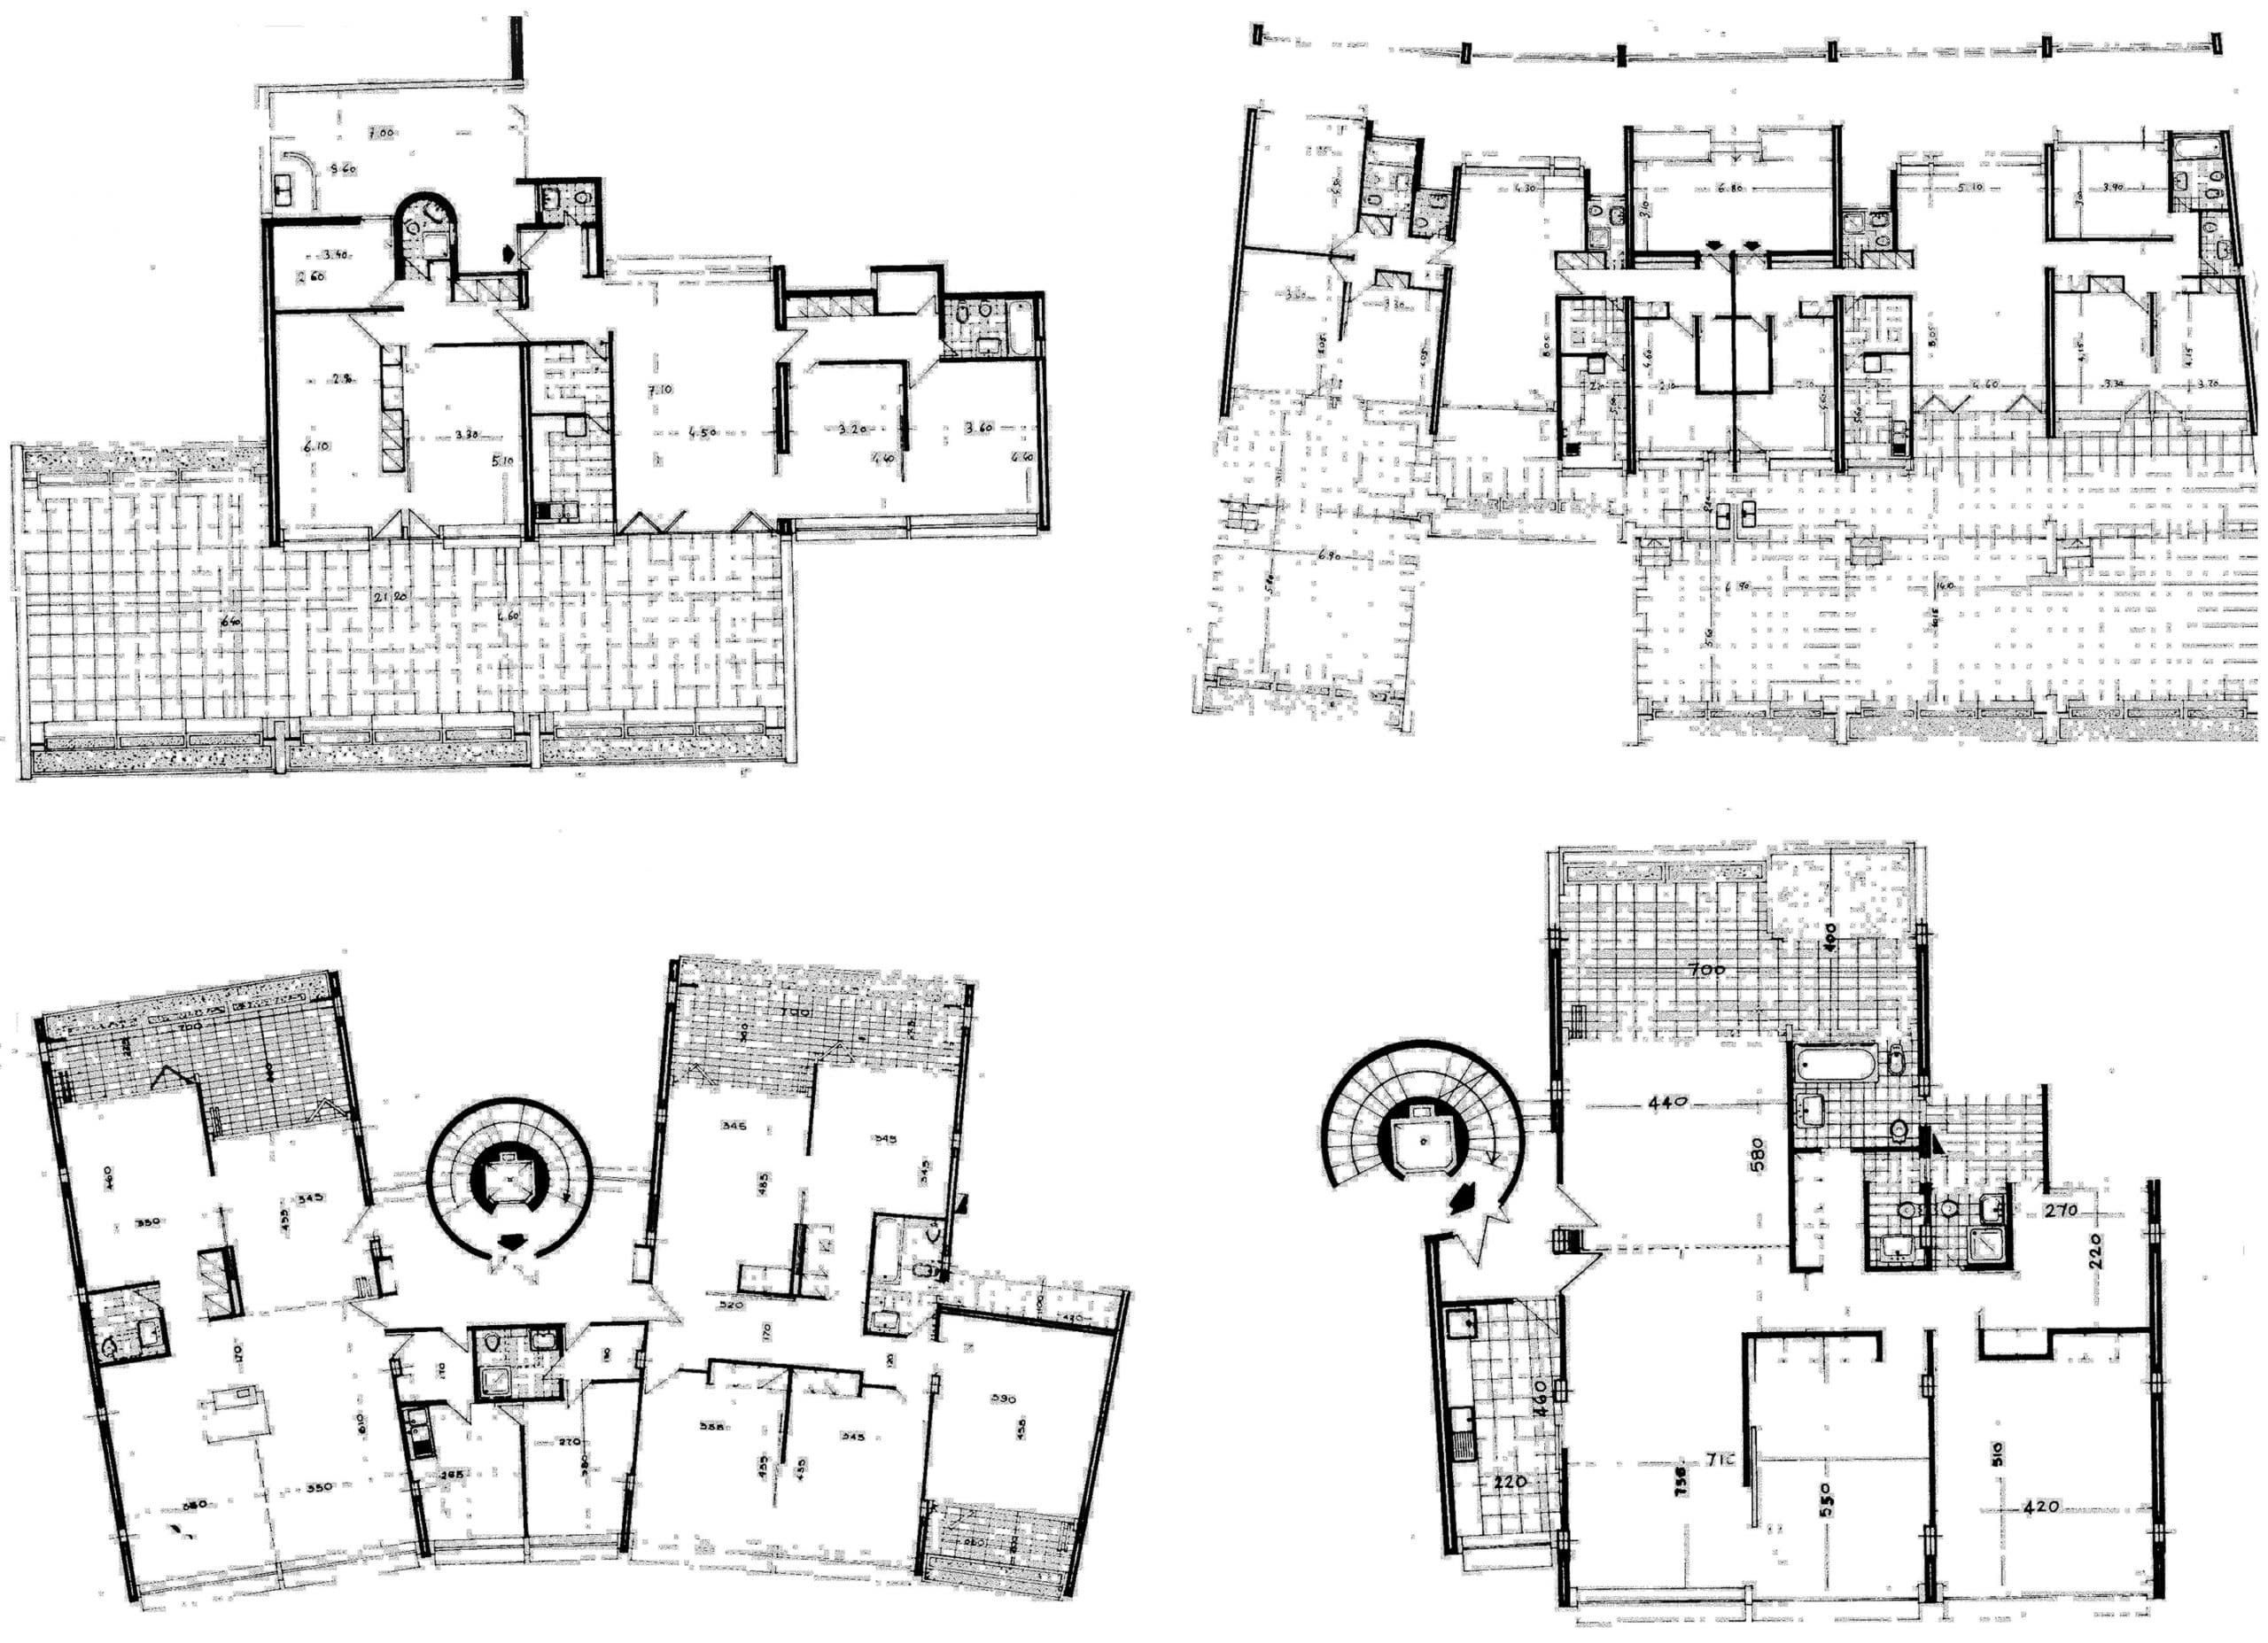 6 - Complesso residenziale di oltre 1.000 alloggi nel PdZ di Vigna Murata, per Consorzio di Cooperative Solidarietà Sociale; con AUA - Piante tipologie alloggi